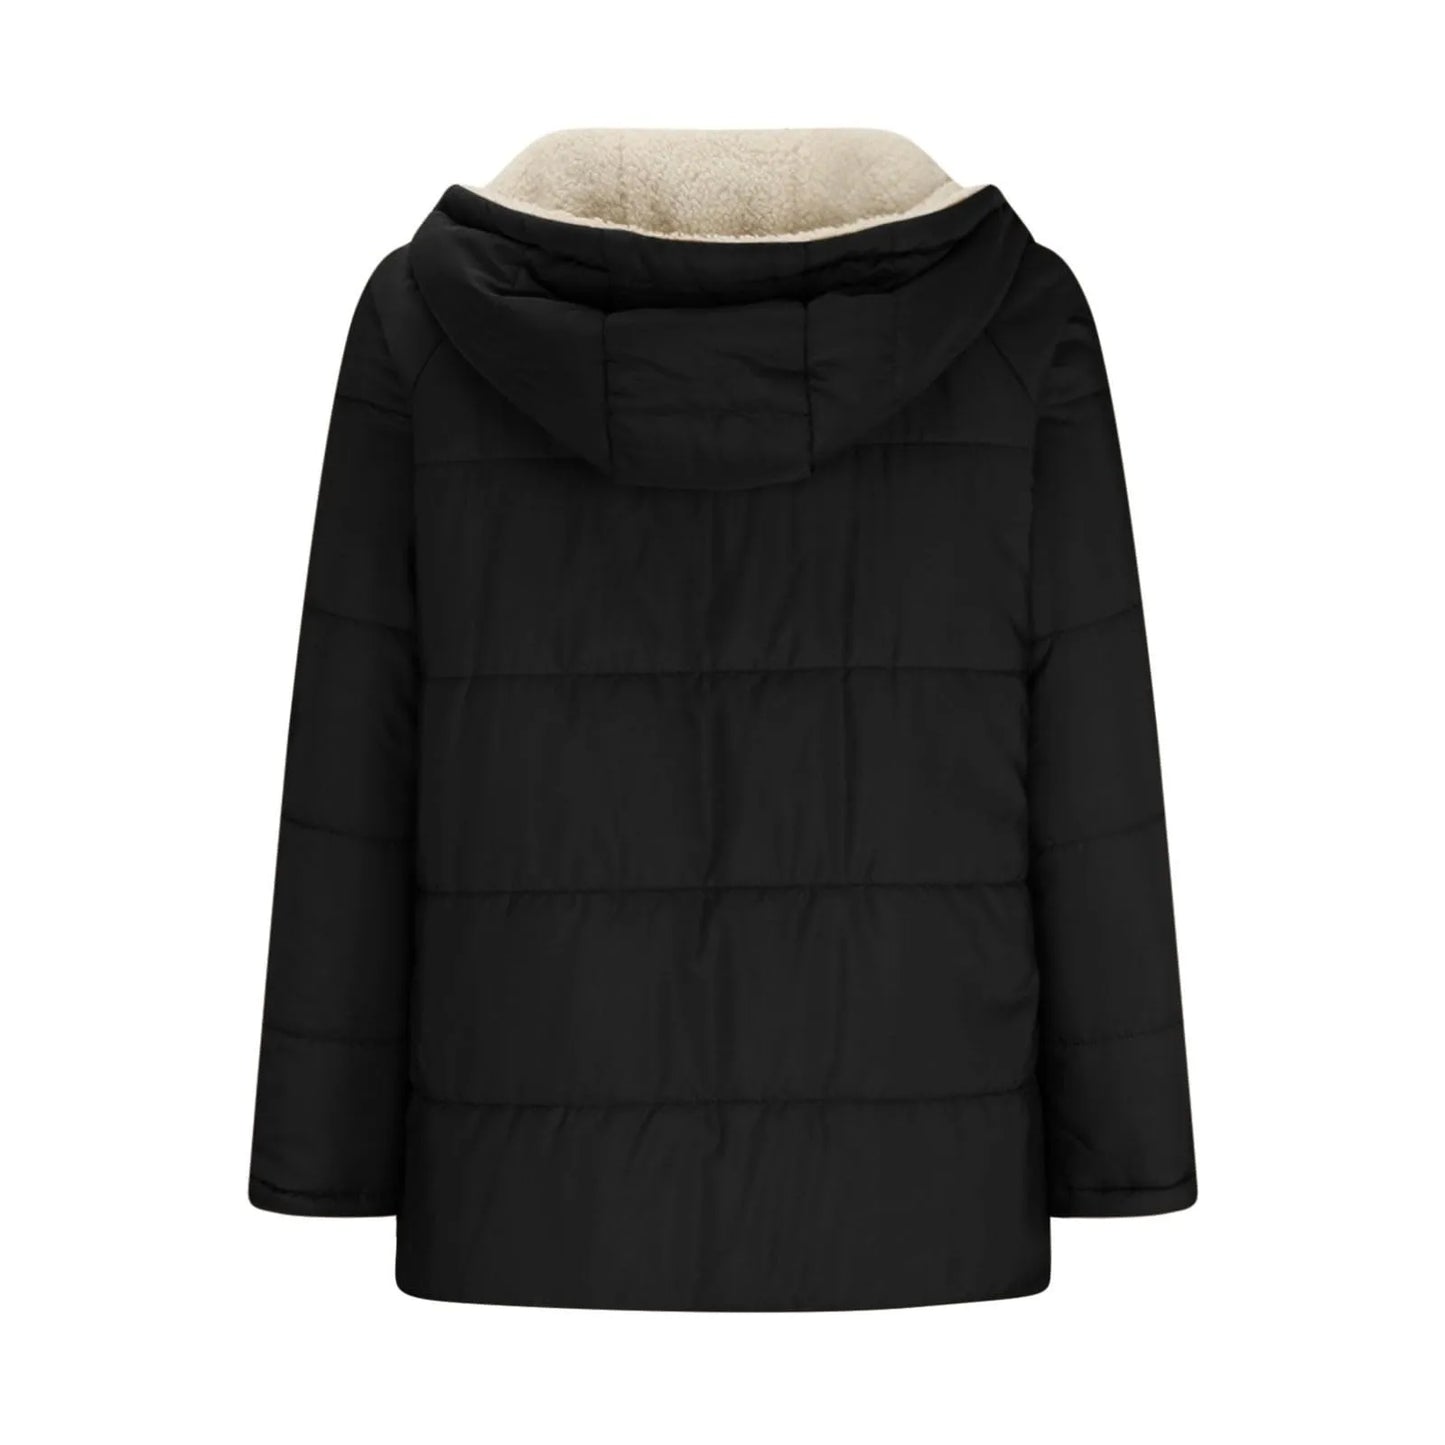 New Winter Women Cotton Jacket Fleece Casual Slim Coat Hooded Parkas Wadded Warm Overcoat Plus Size Female Coat